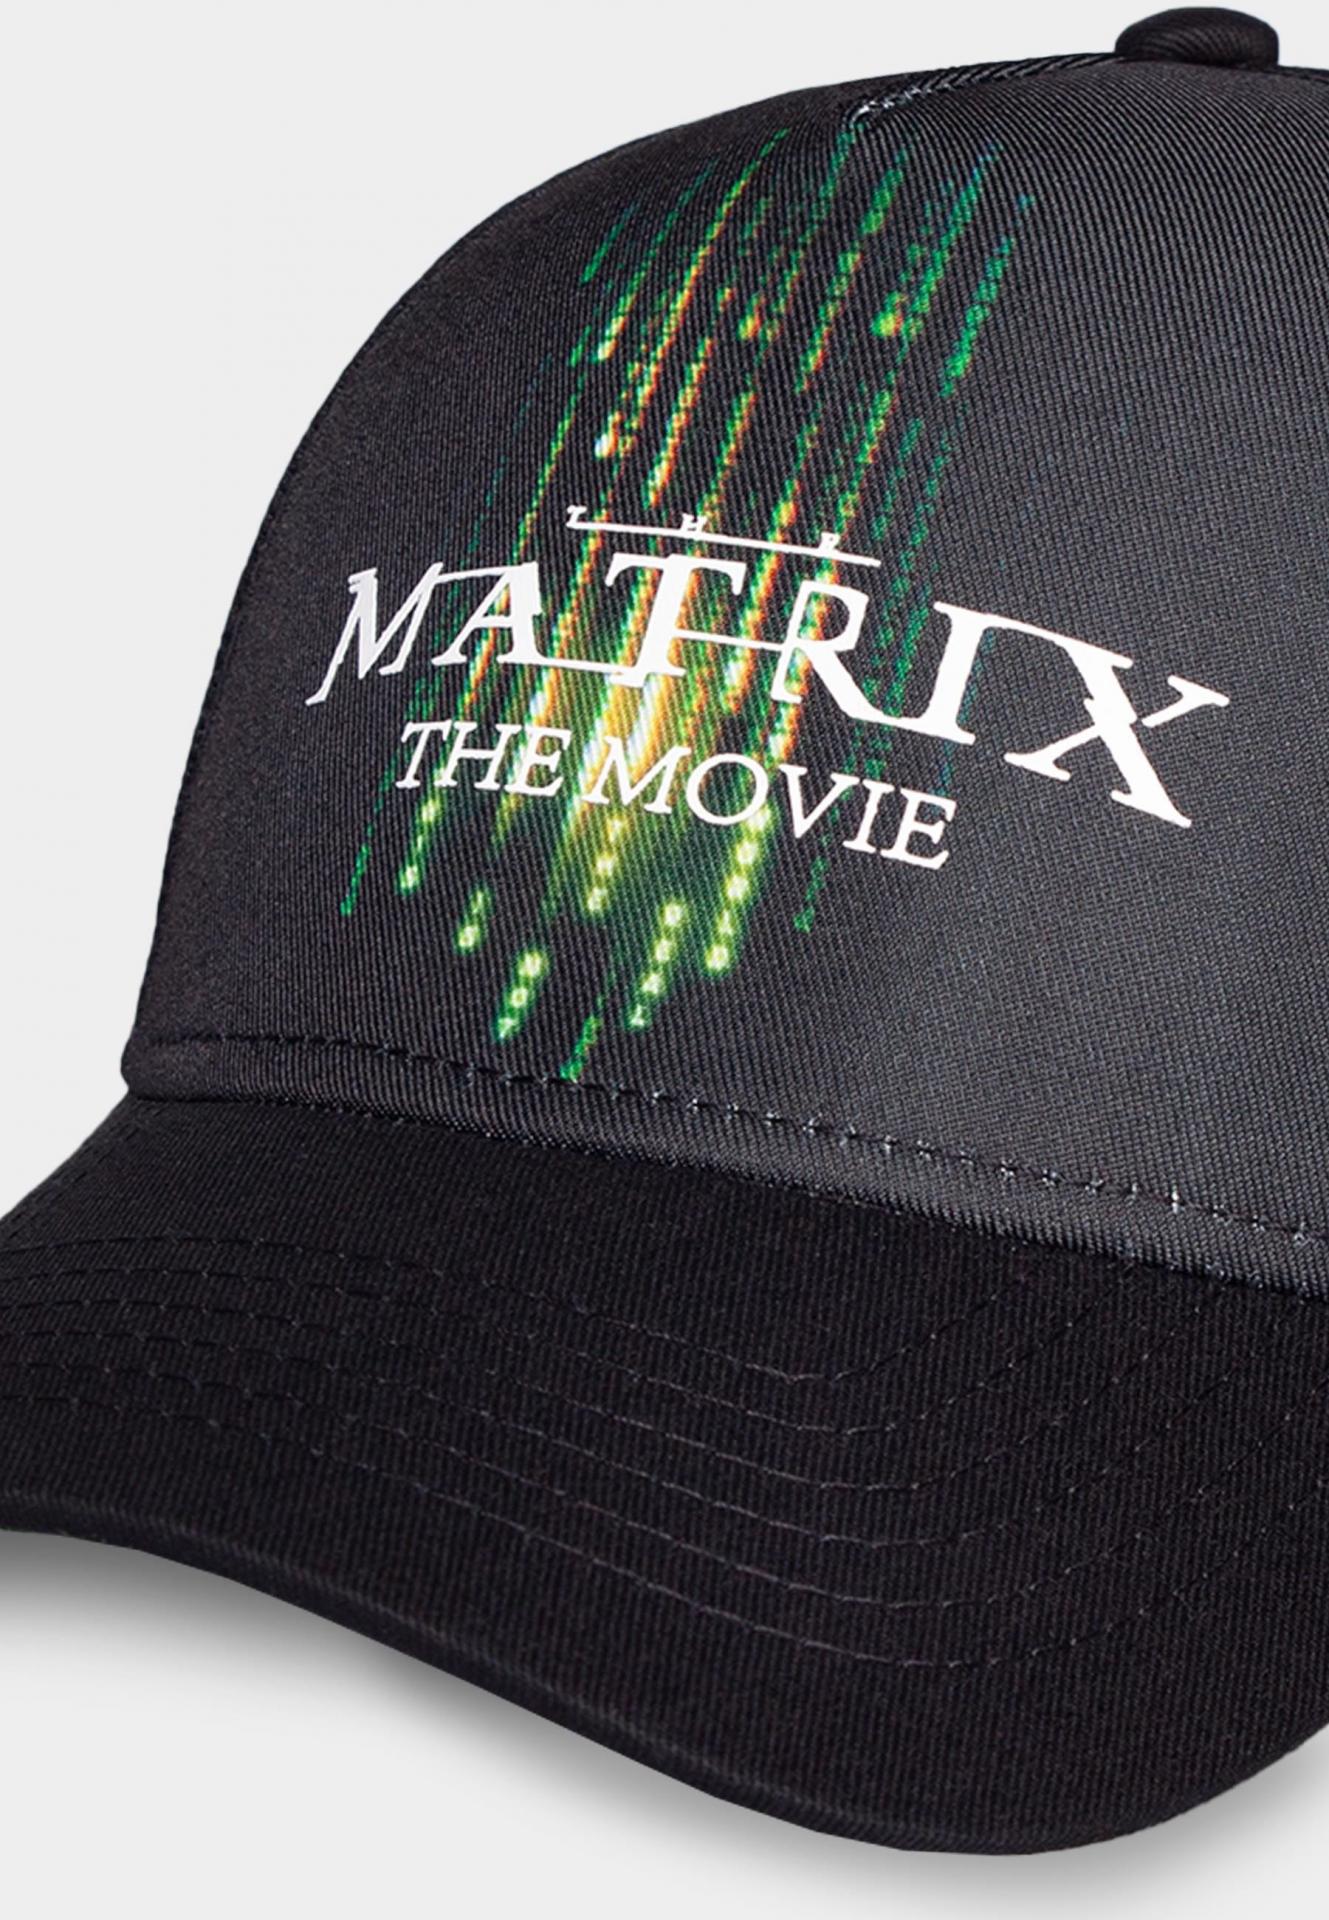 The matrix men s adjustable cap 1 jawascave 2